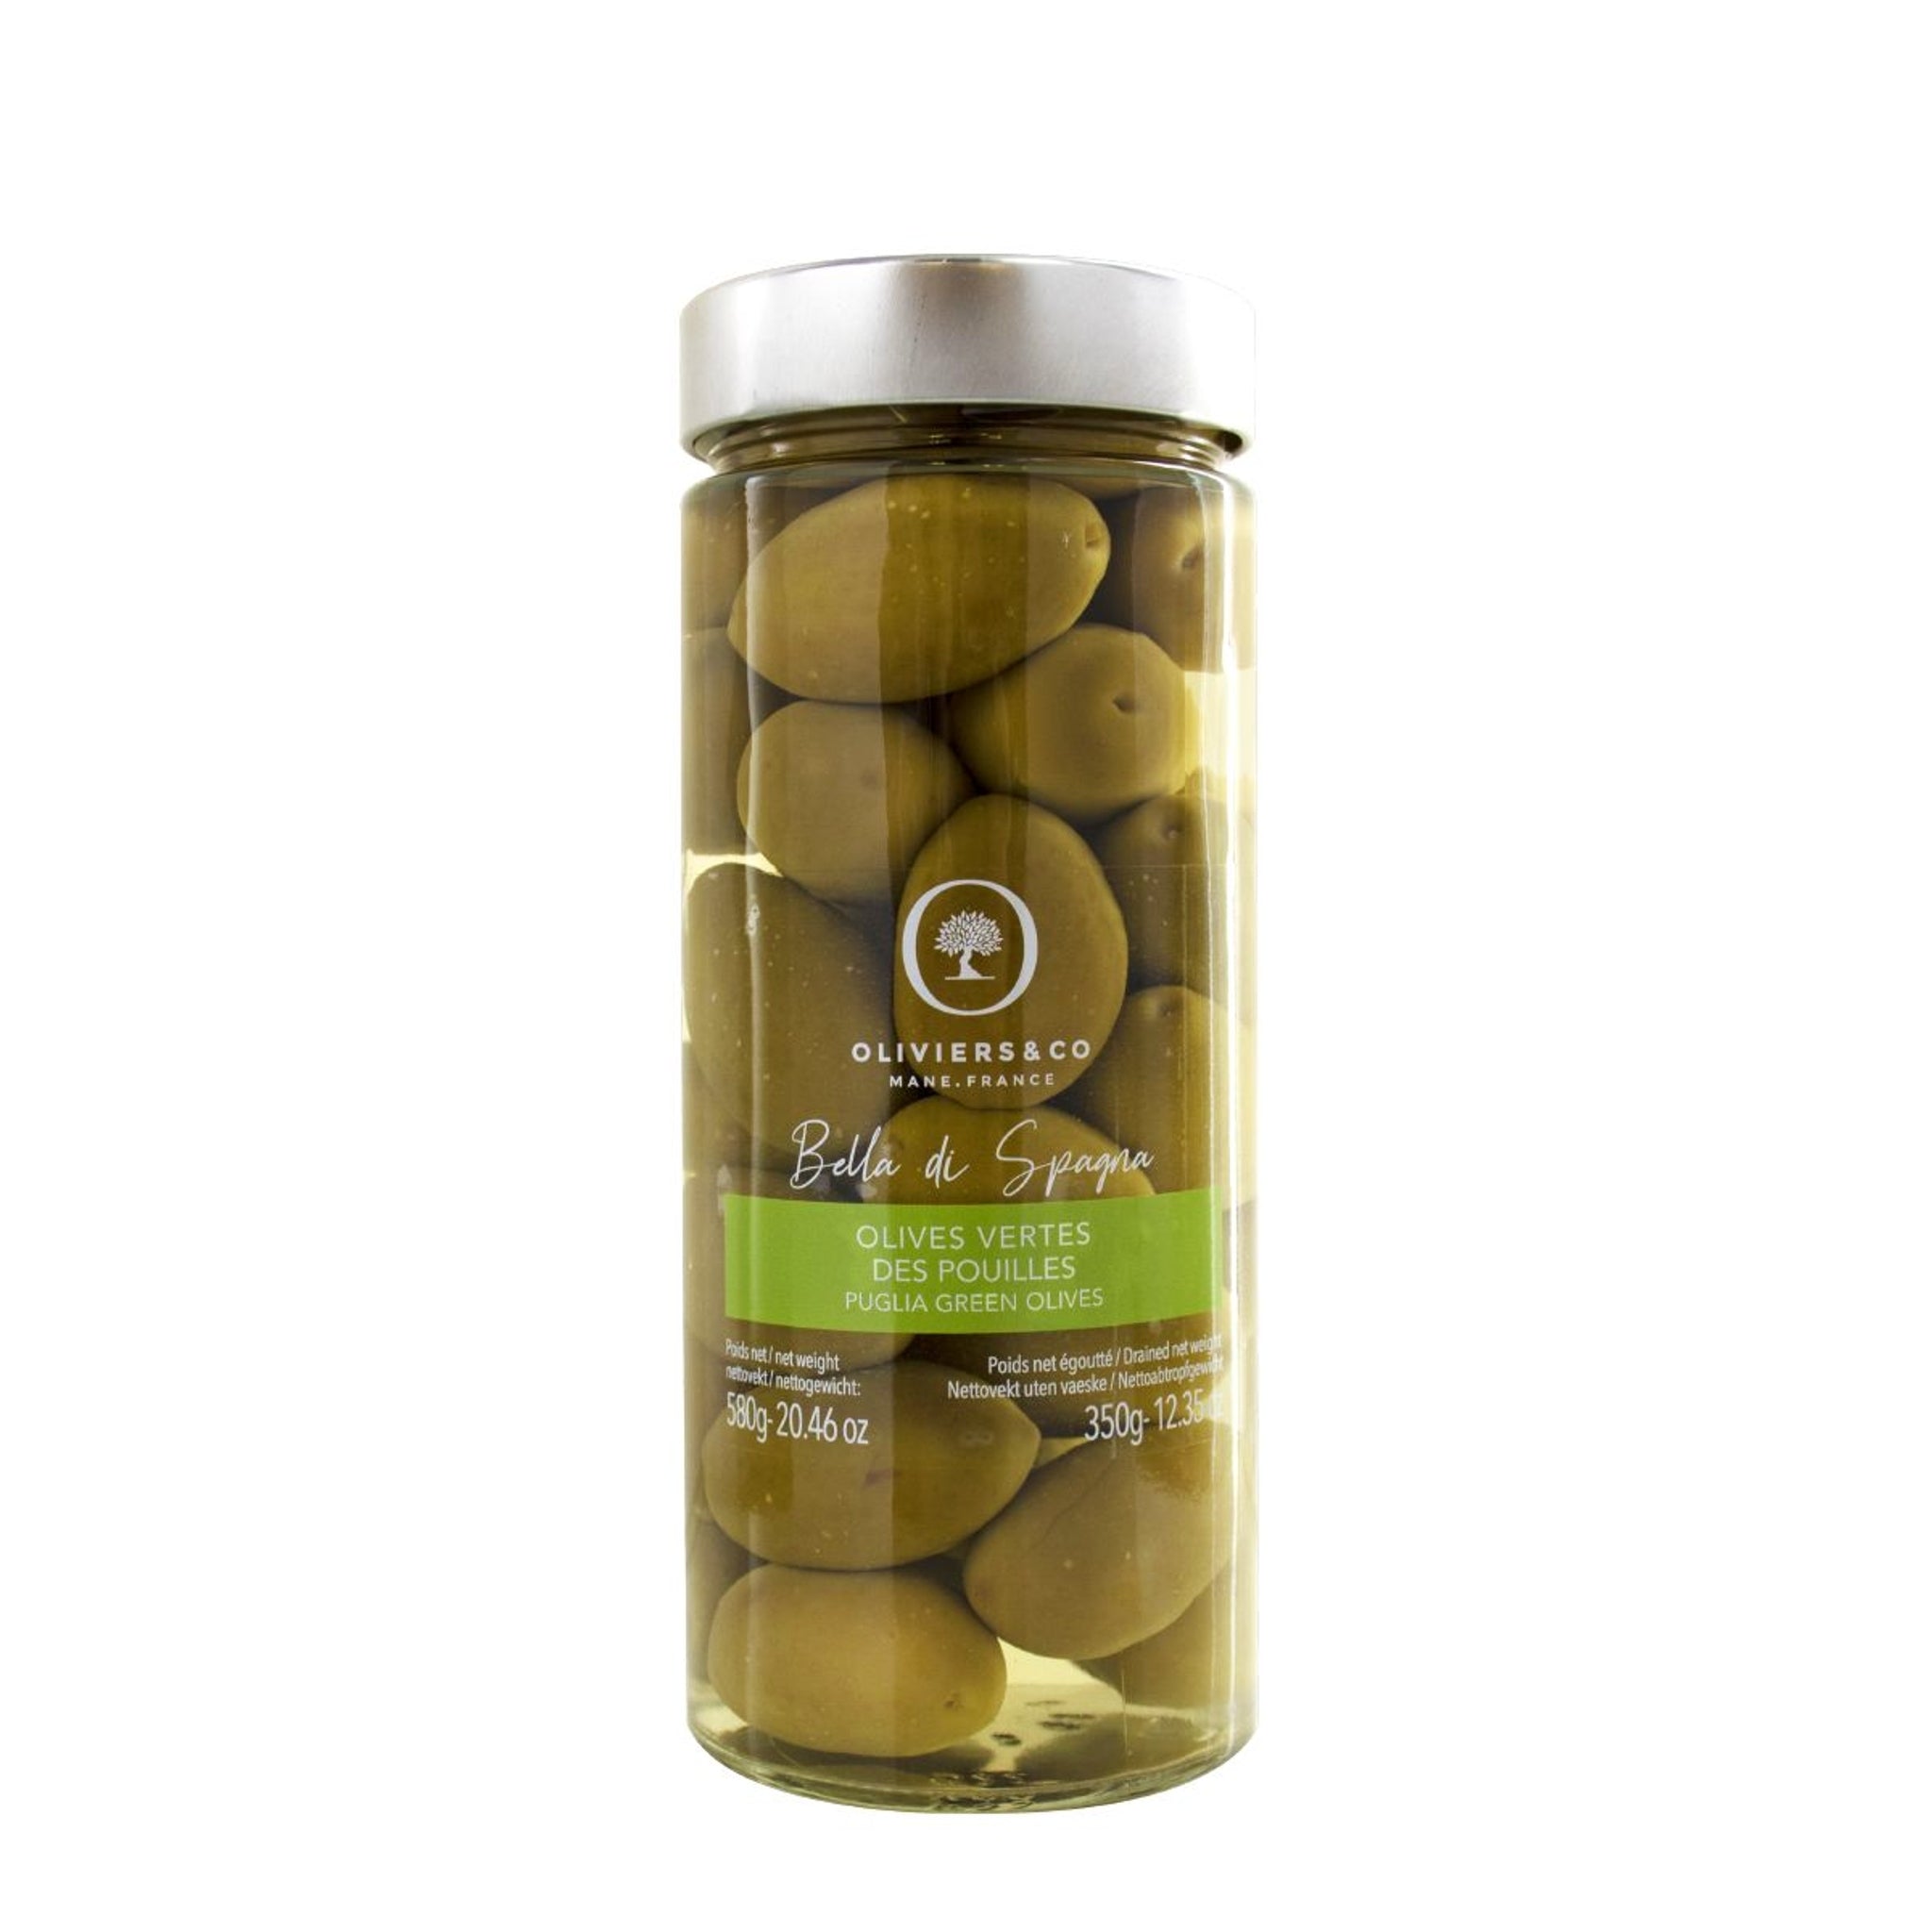 Grønne Bella di Spagna oliven fra Oliviers & Co